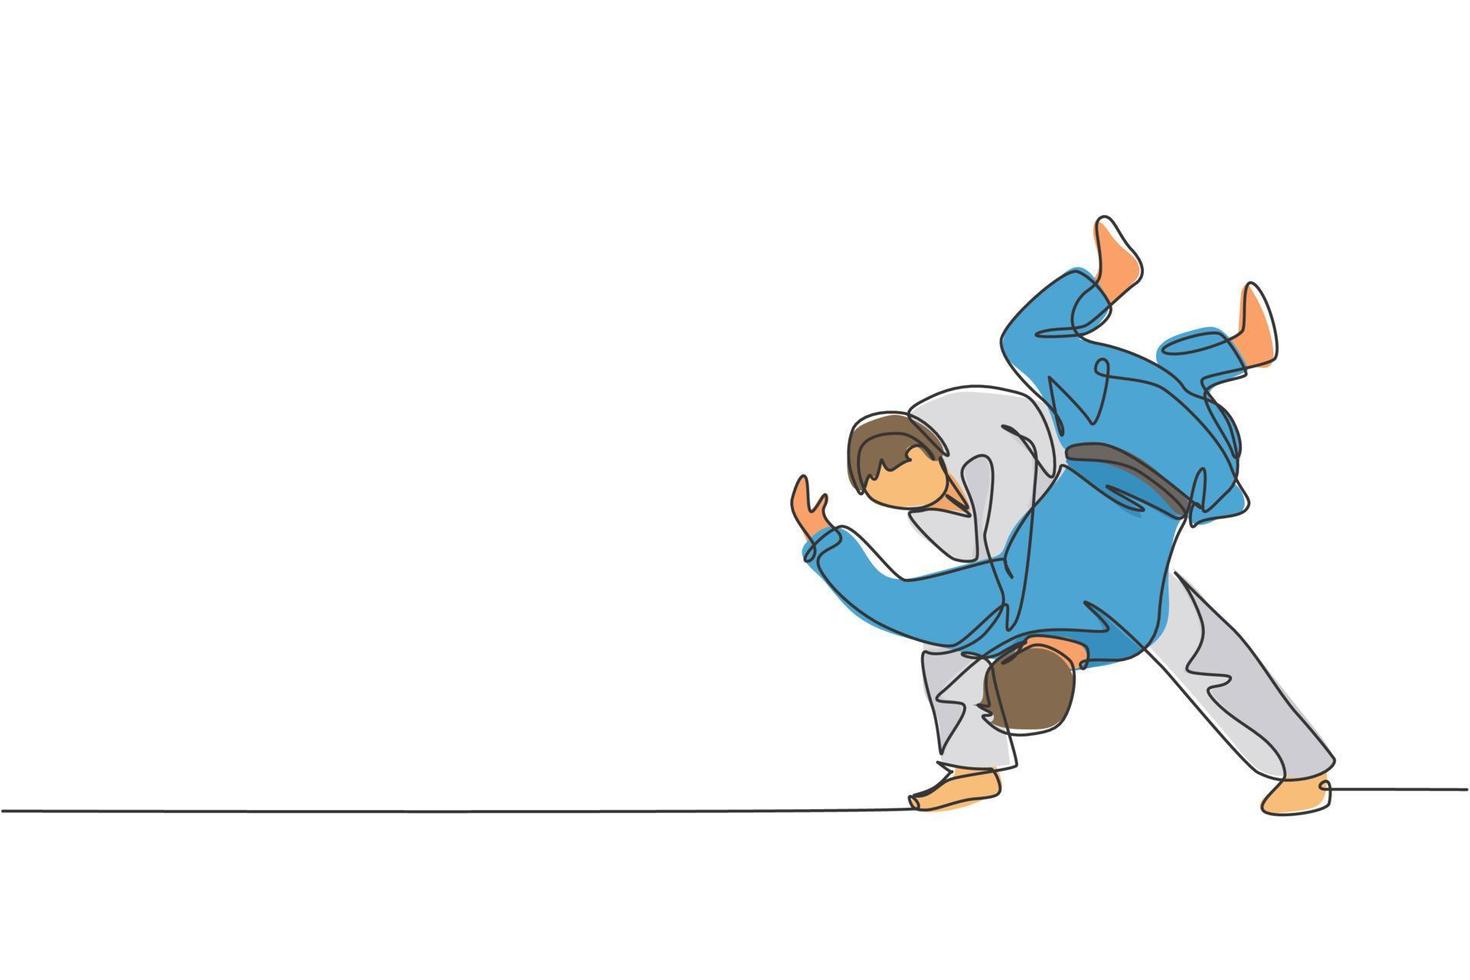 en enda linjeteckning av två unga energiska judokas fighter män slåss slåss på gym center vektorgrafisk illustration. kampsport tävlingskoncept. modern kontinuerlig linjeritningsdesign vektor